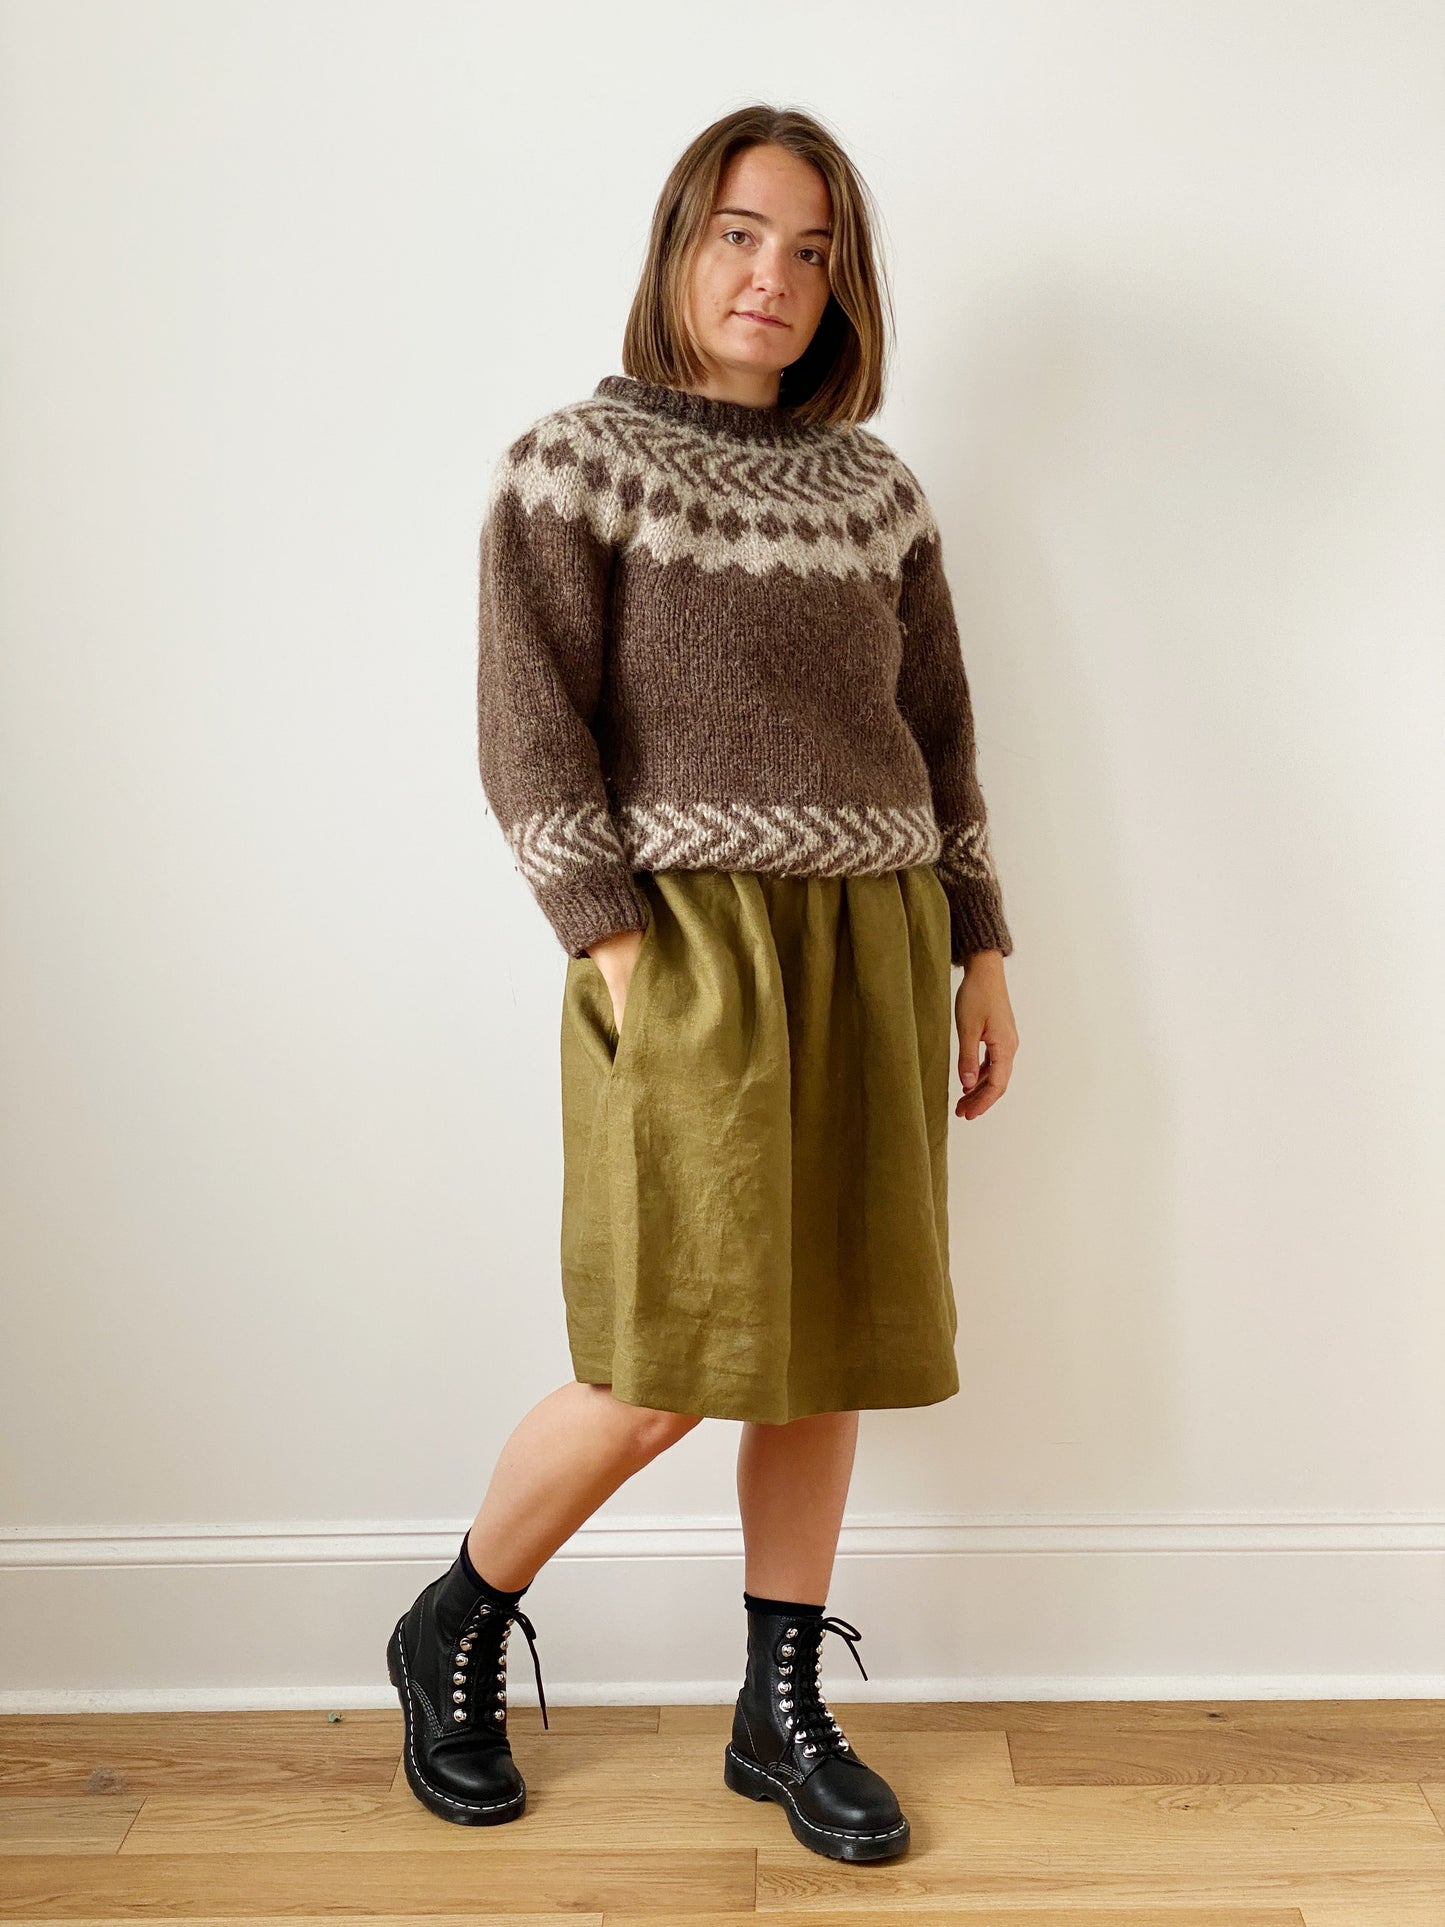 Hand knit sweater (xs)